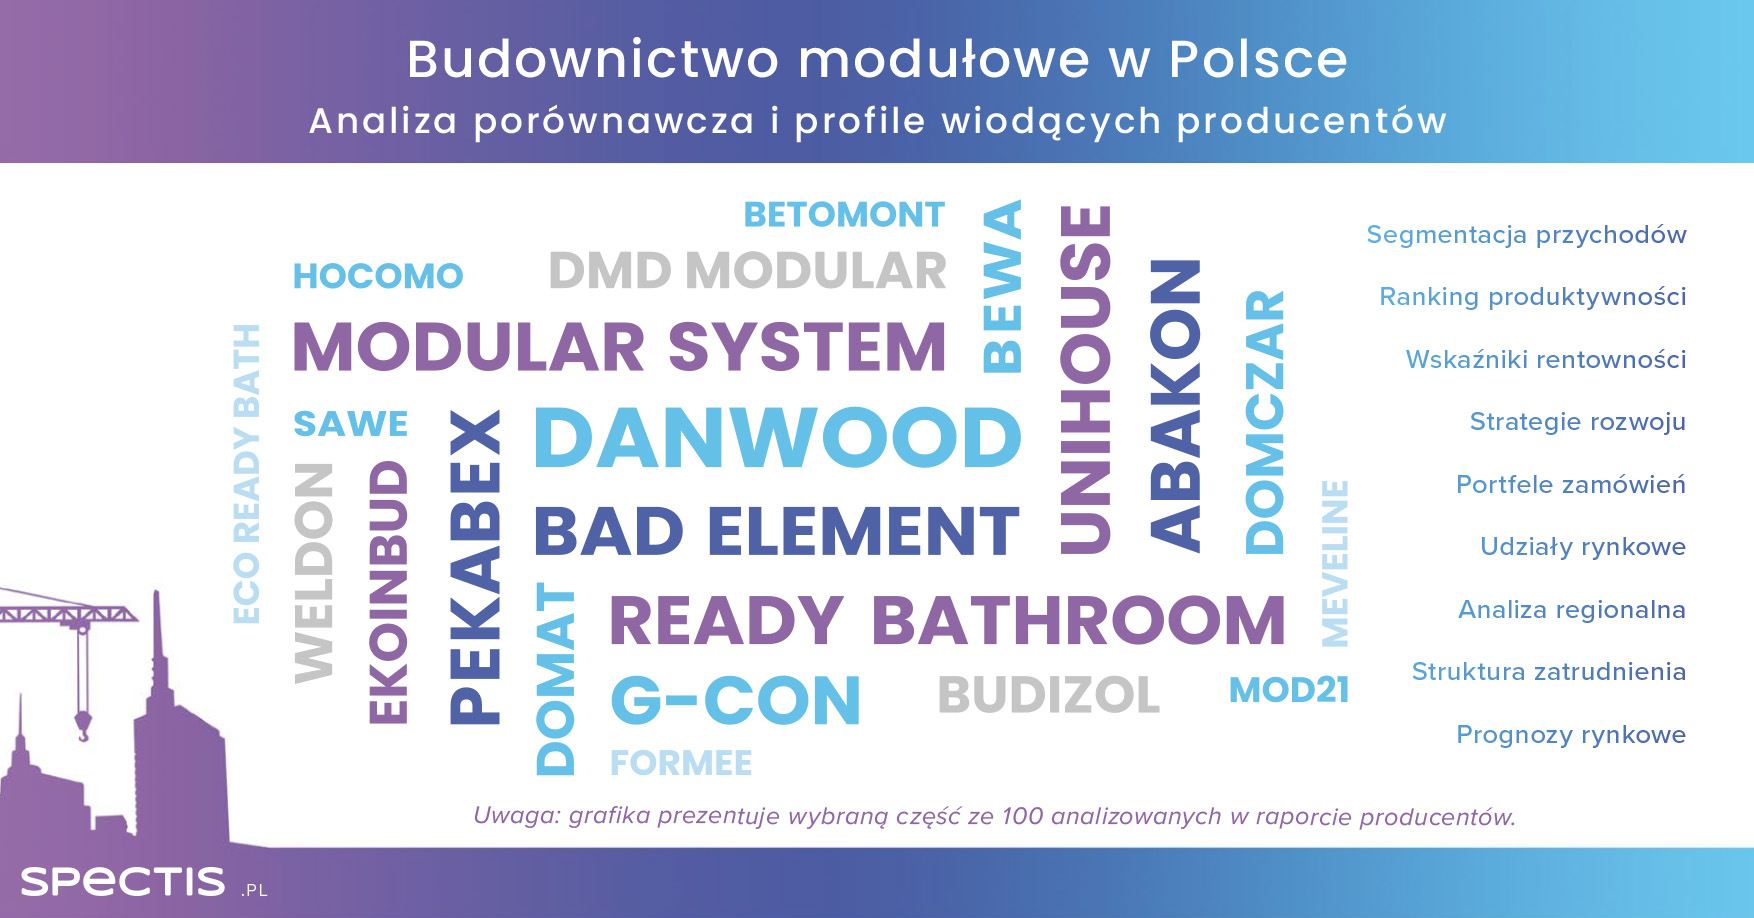 Mnogość rozwiązań technologicznych na rynku budownictwa modułowego w Polsce